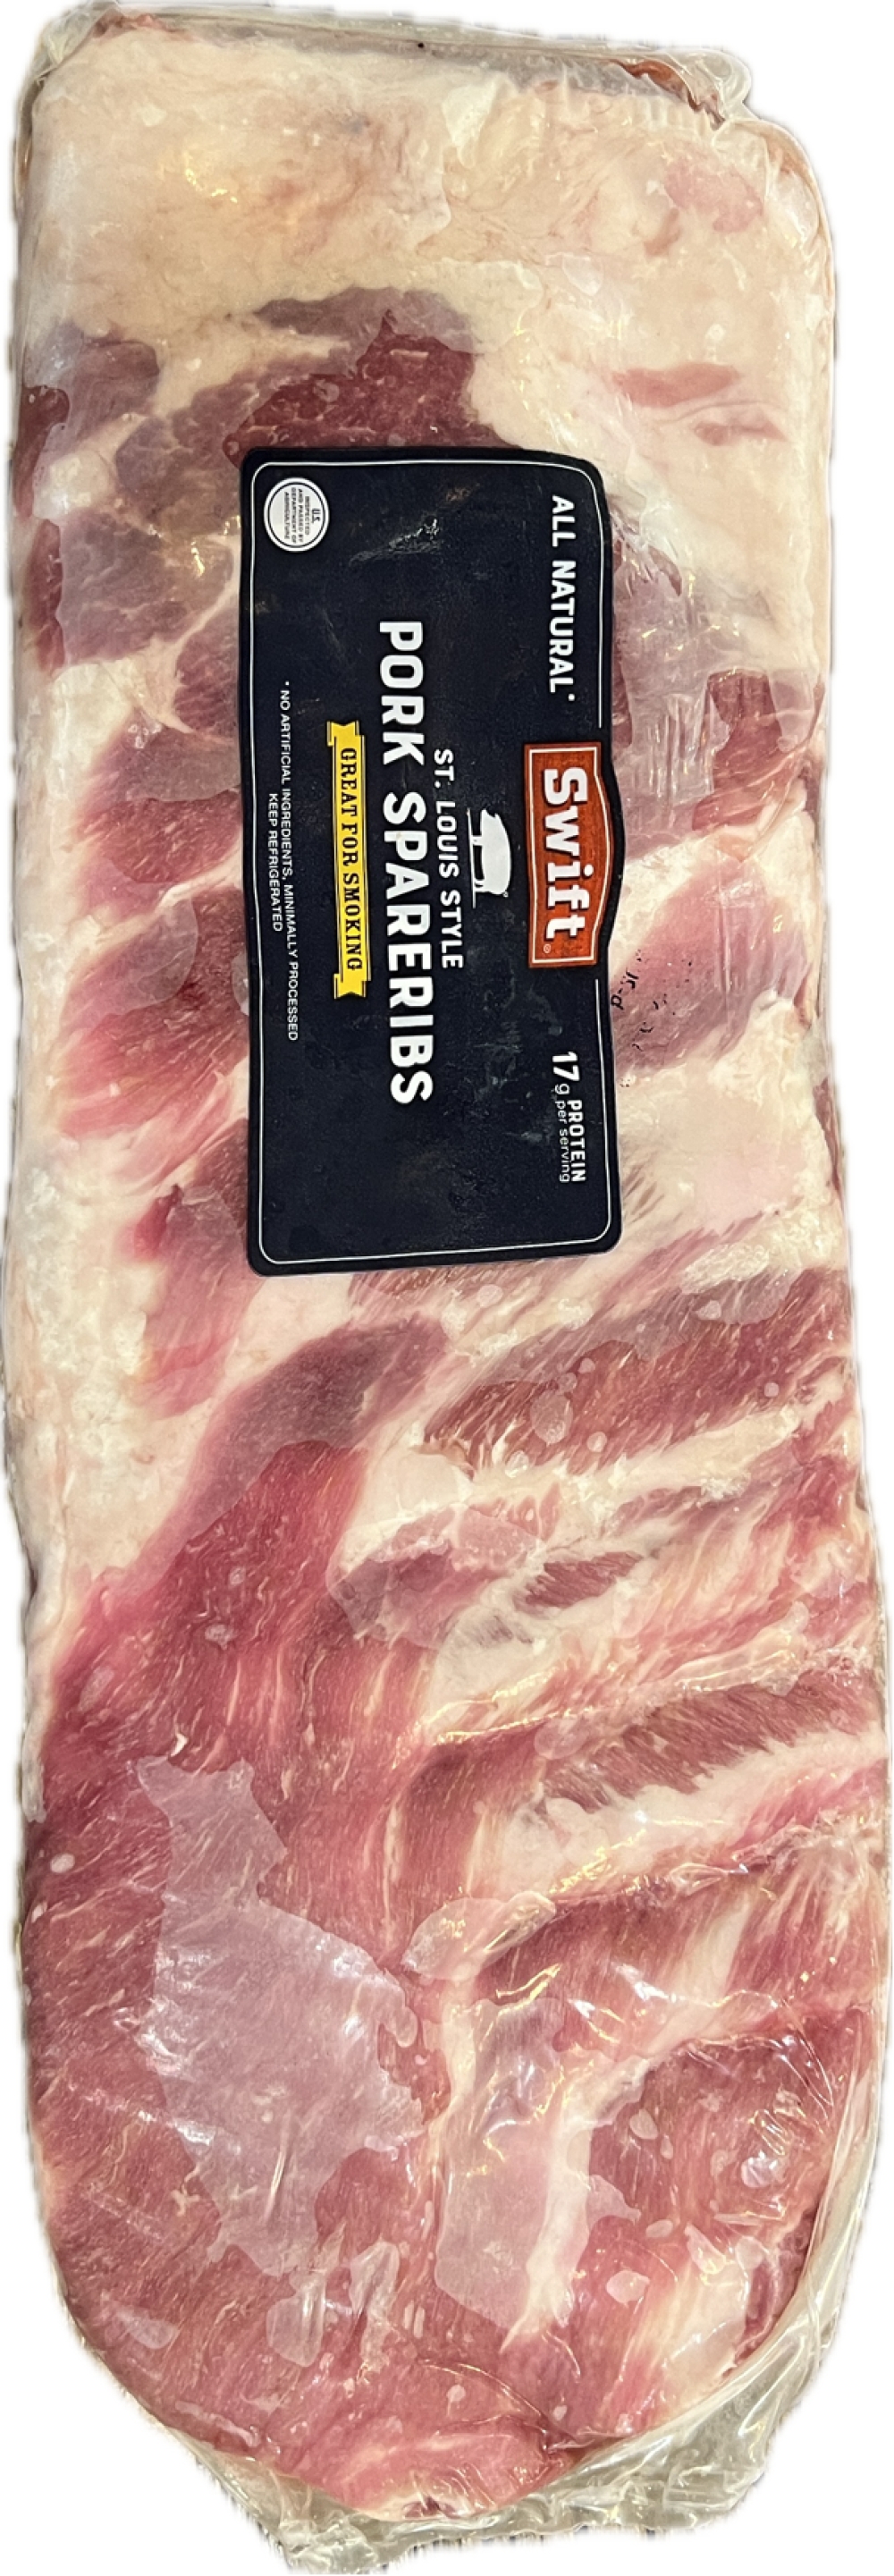 Pork Spare Ribs US St. Louis Style fryst, 2174, Kjøtt, Wulff & Co AS